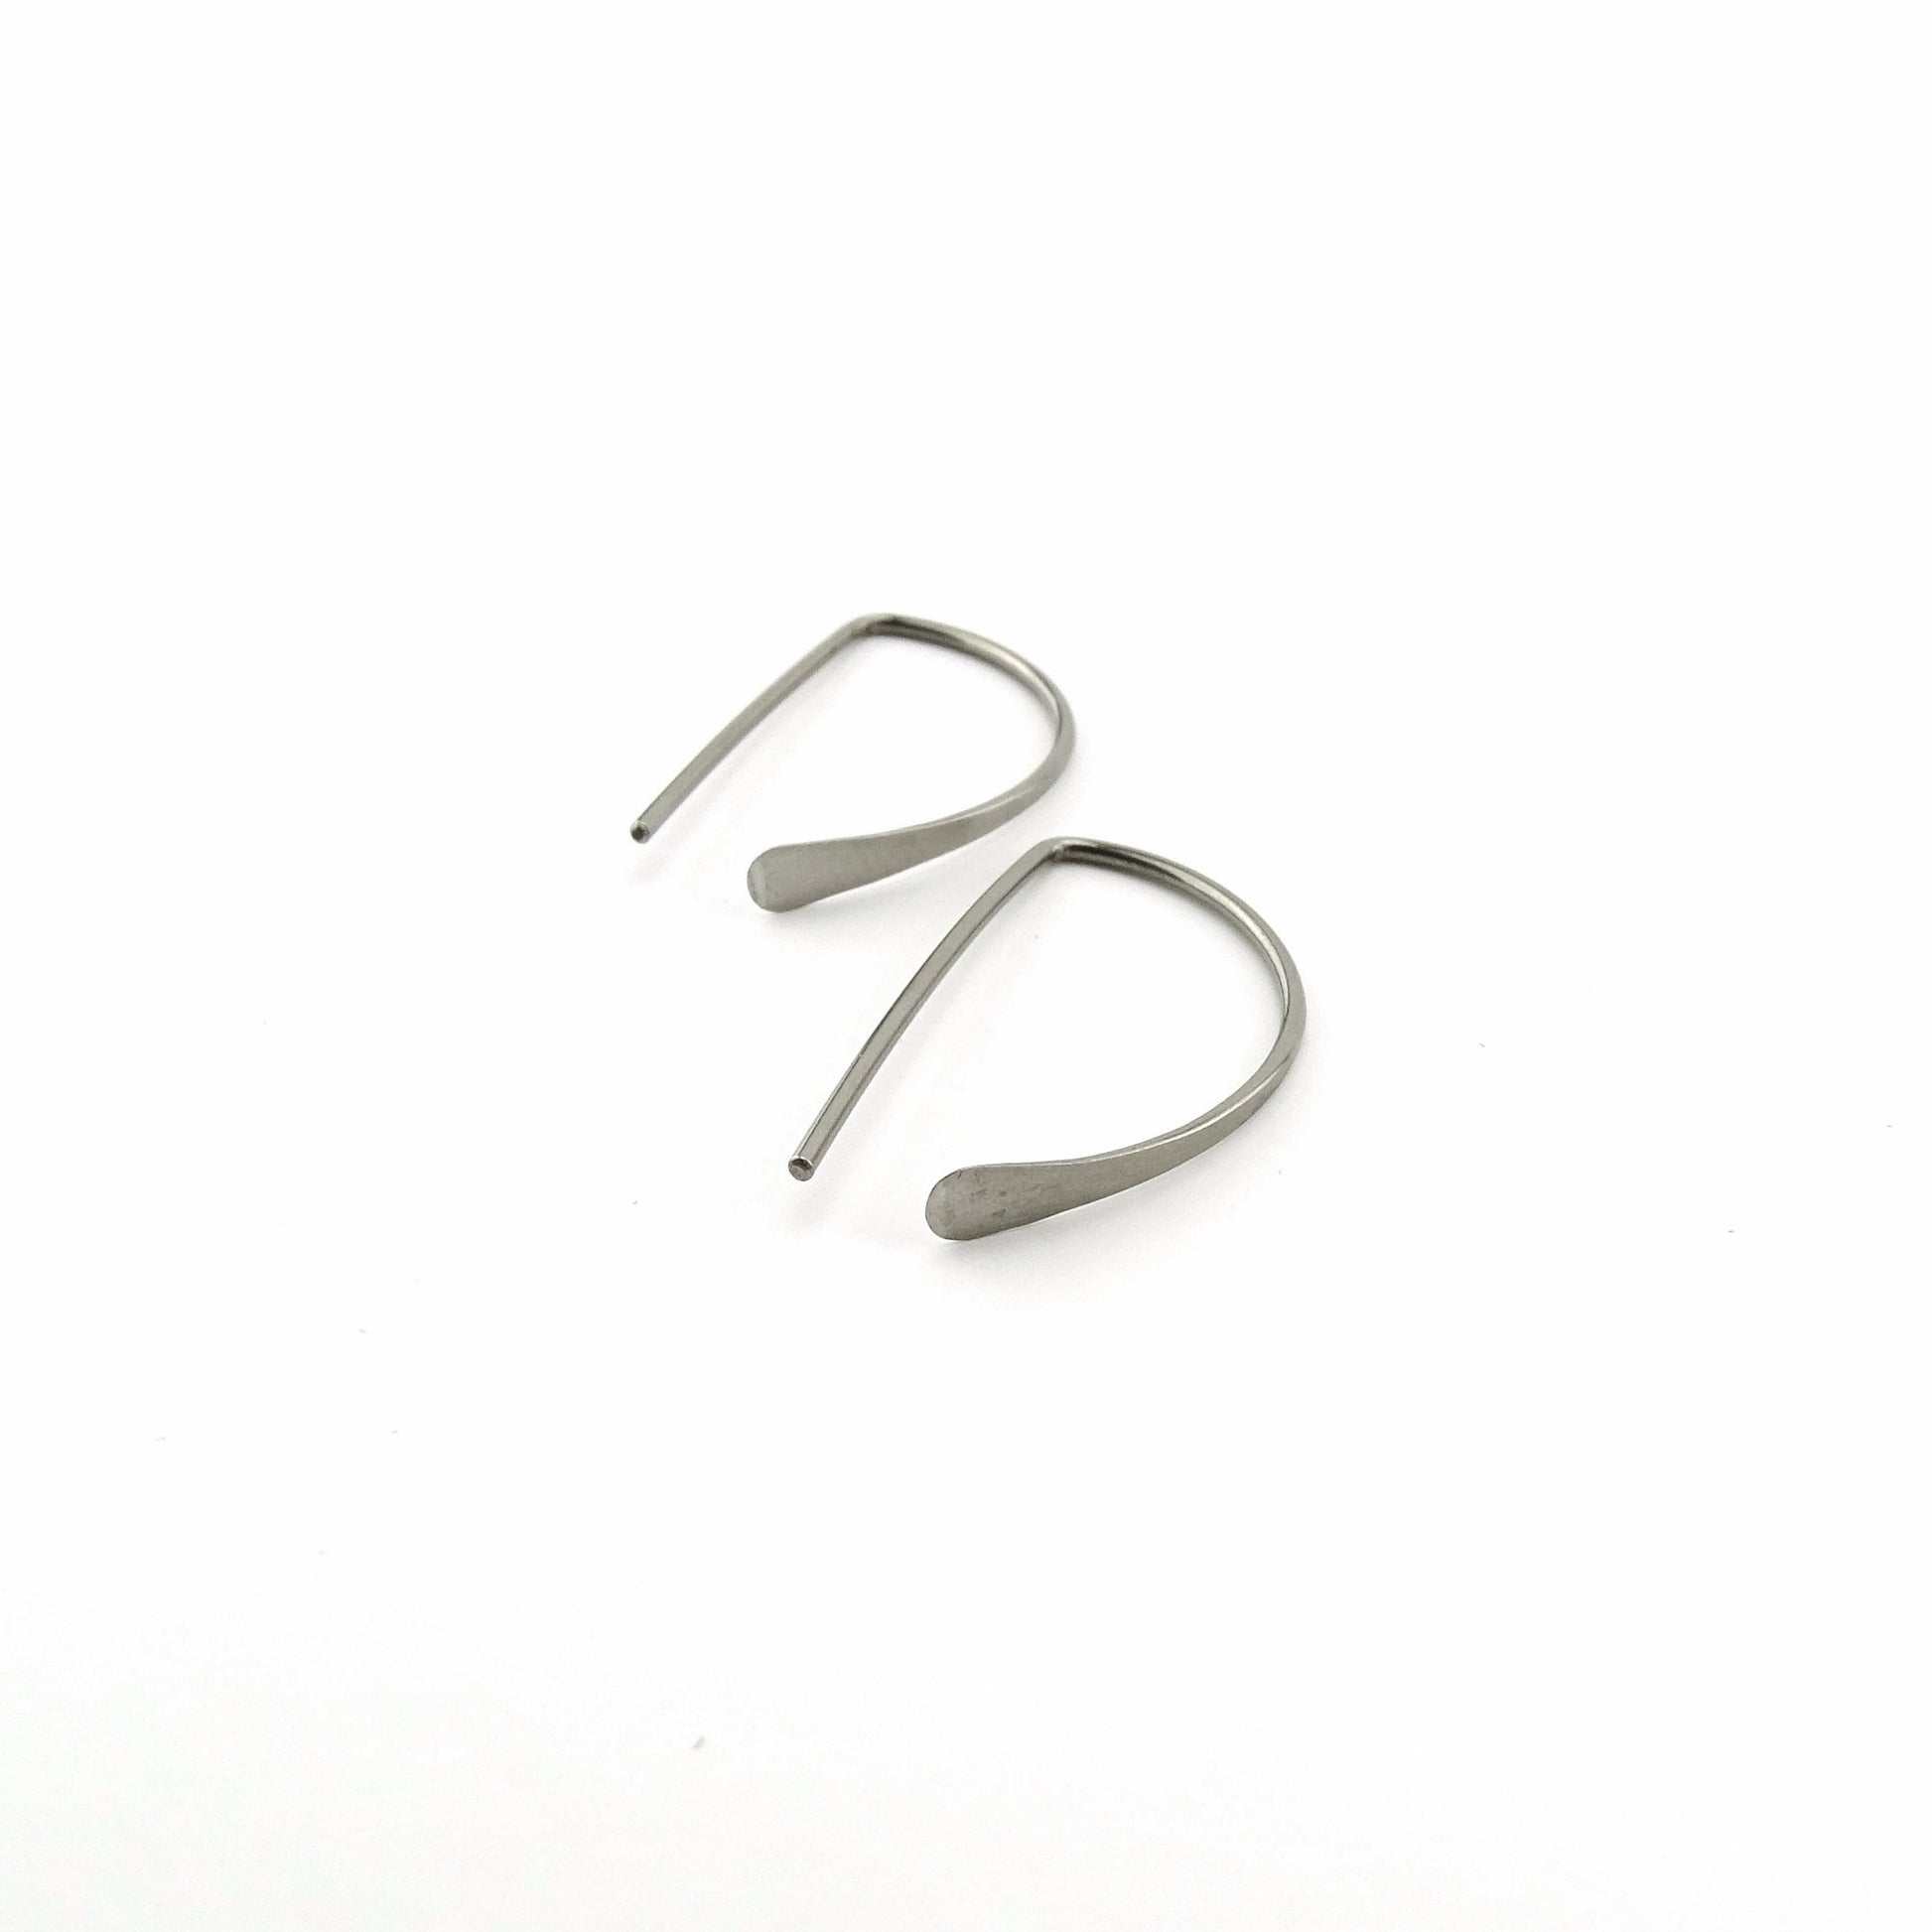 Niobium Half a Hoop Threader Earrings, Nickel Free D Shaped Slider Earrings, Silver Niobium Small Open Hoops, Hypoallergenic Semi Circle